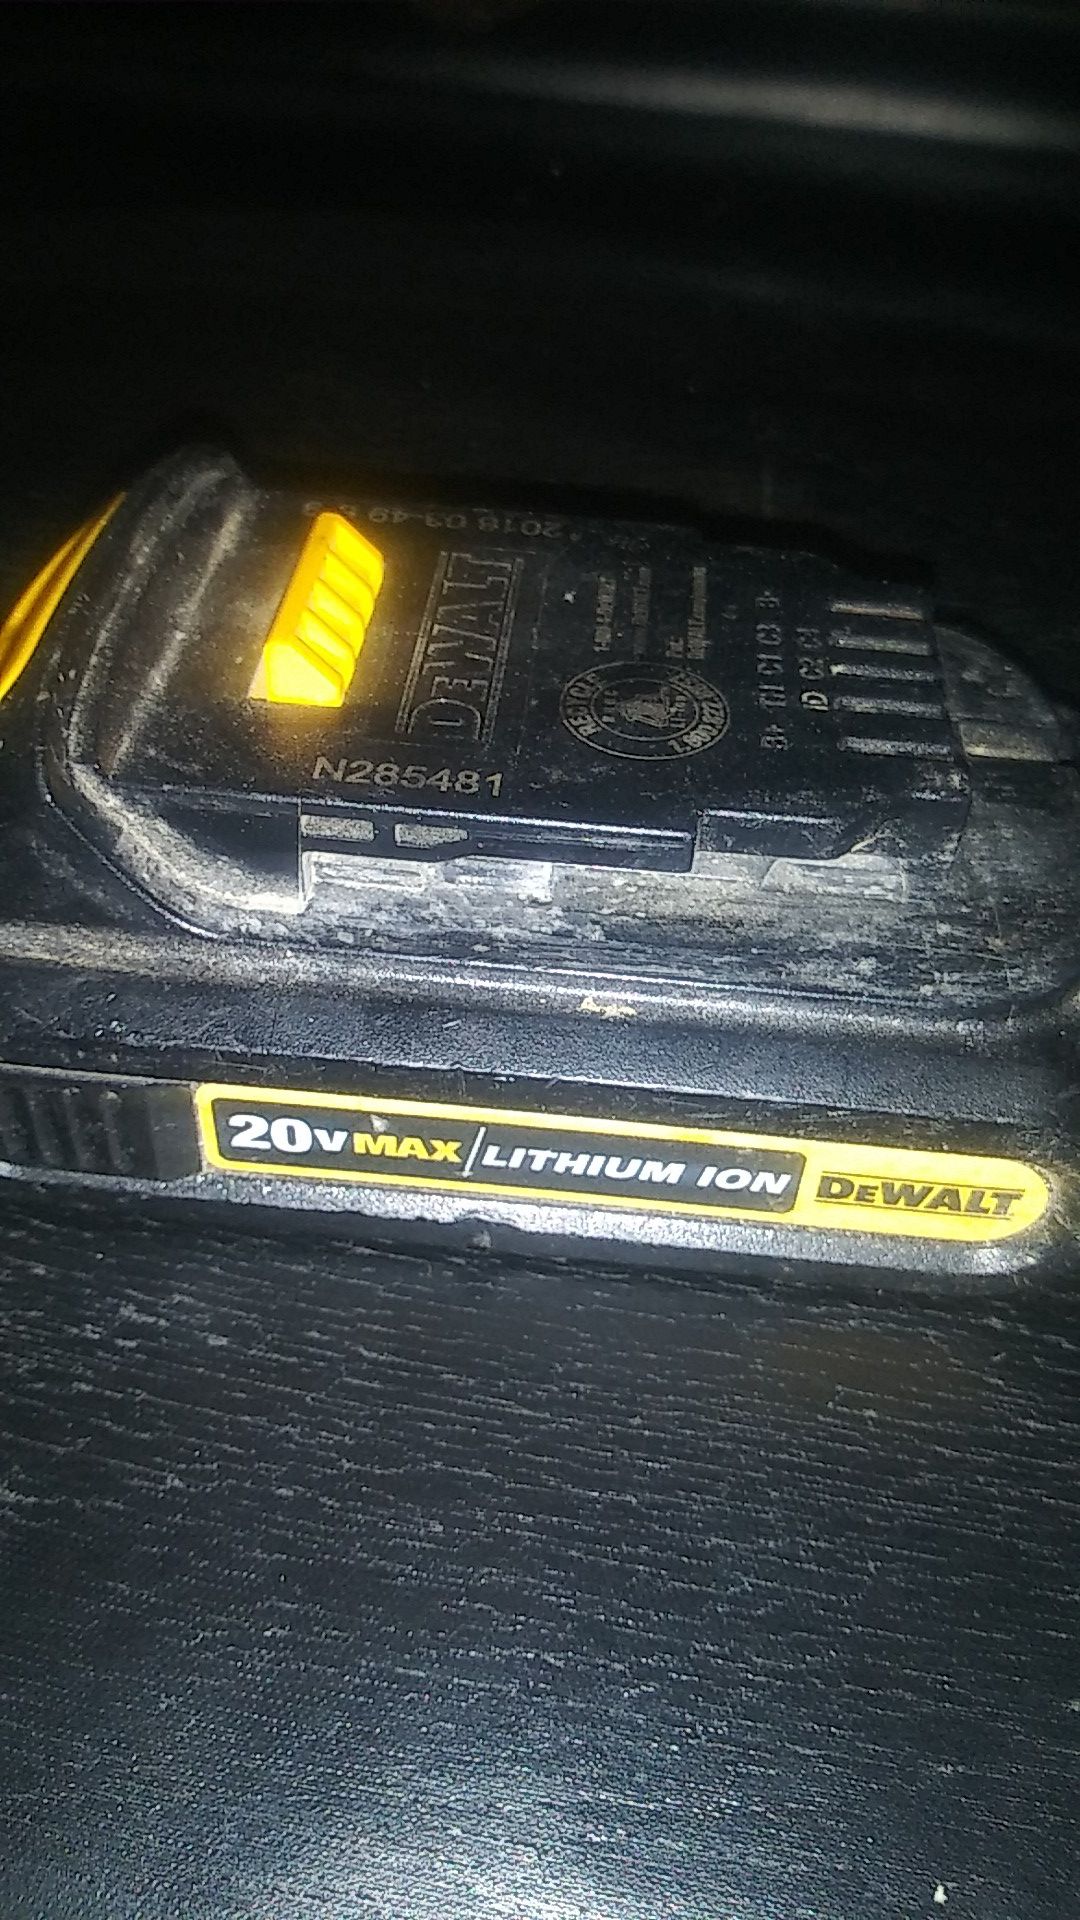 20v dewalt battery